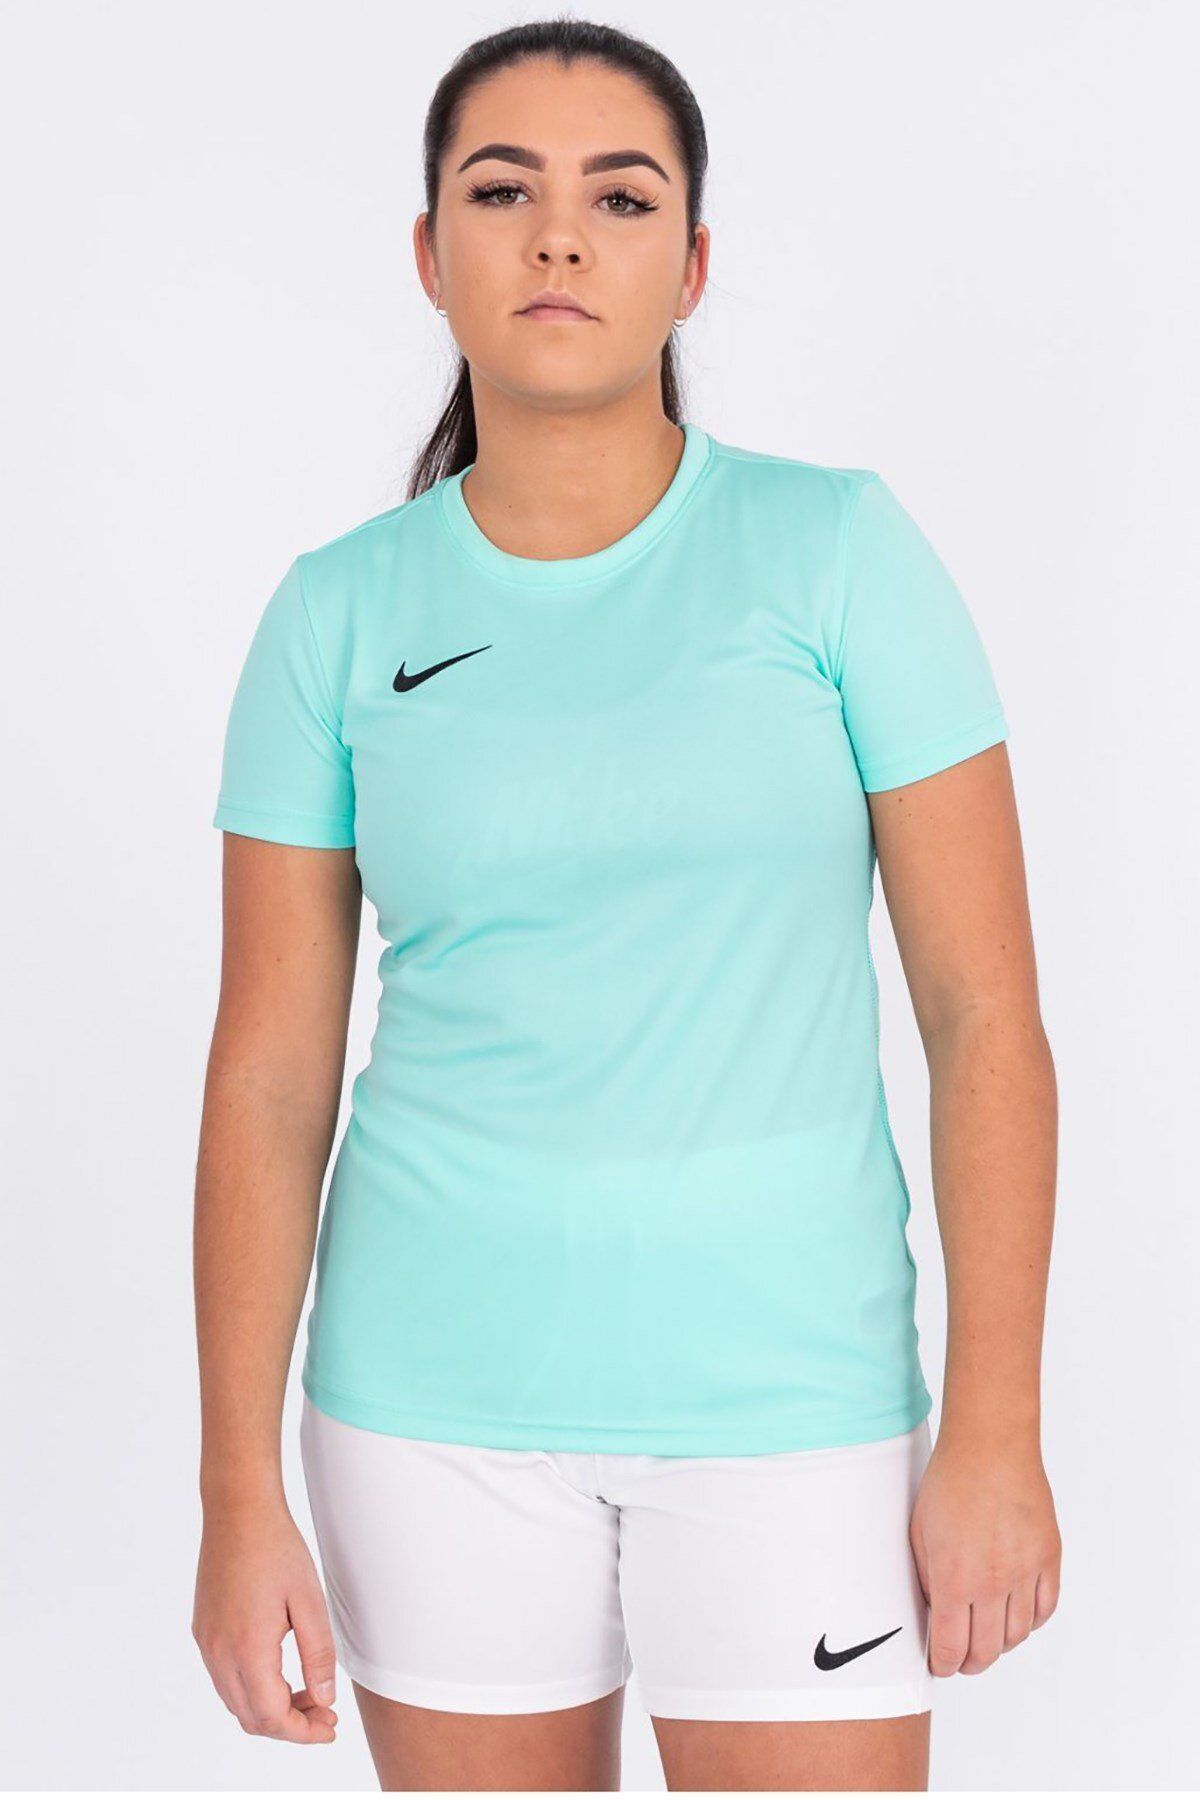 Nike Dry Park Vıı Kadın Tişörtü Bv6728-354